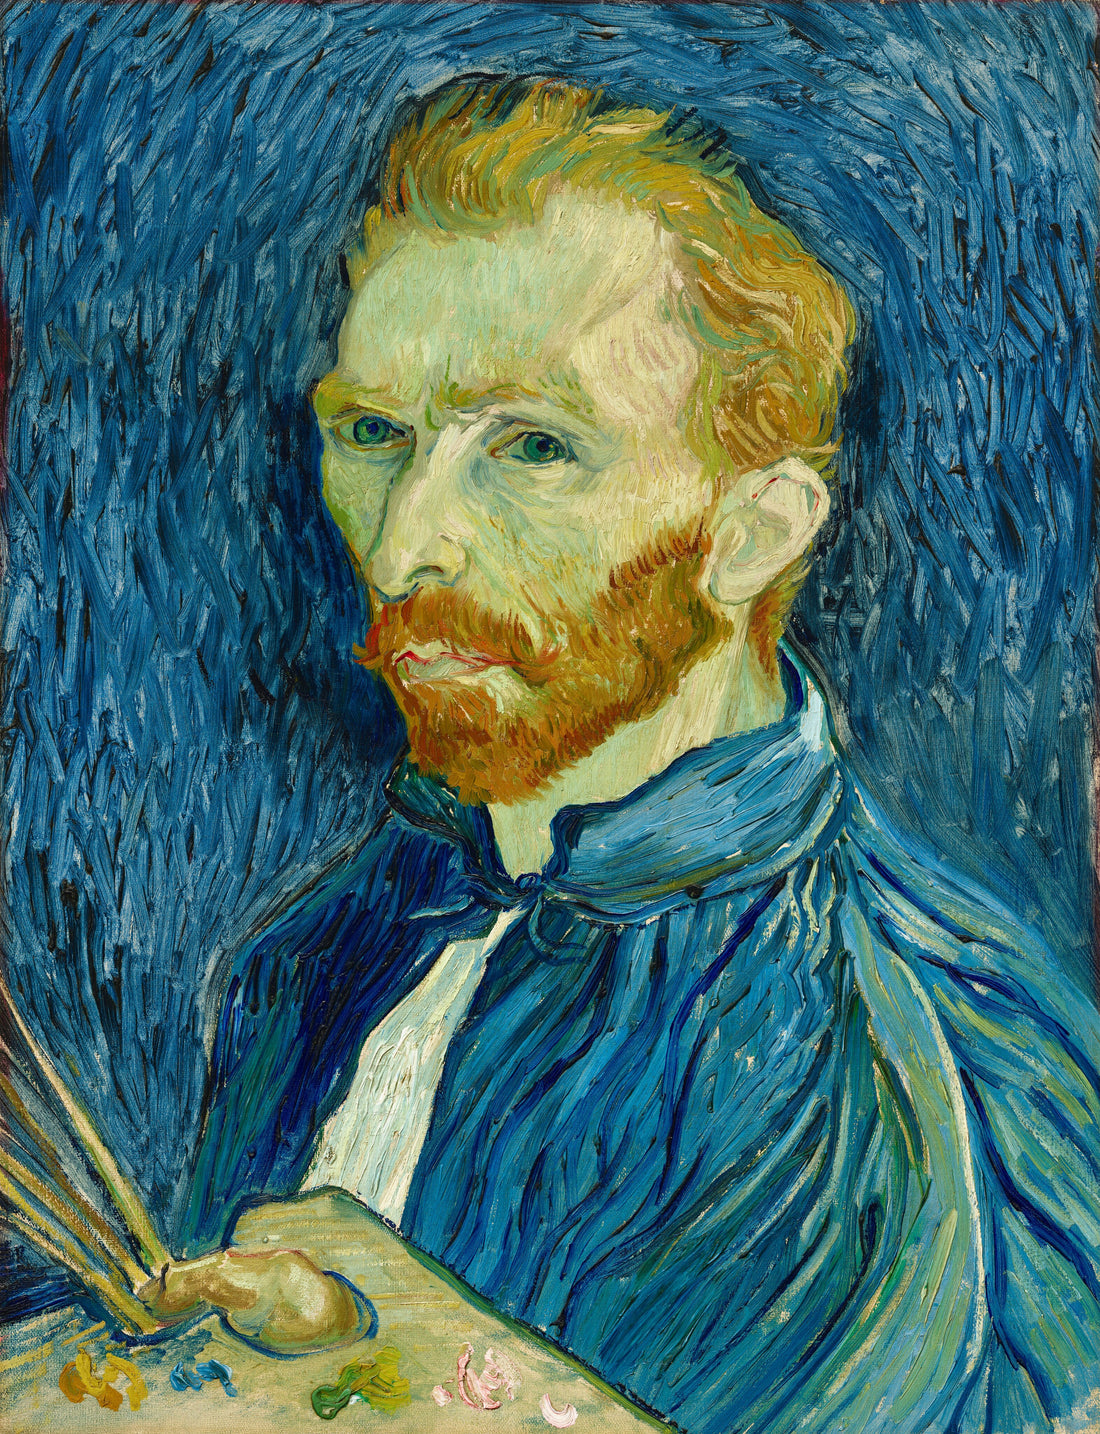 The Disturbing Life of Vincent Van Gogh